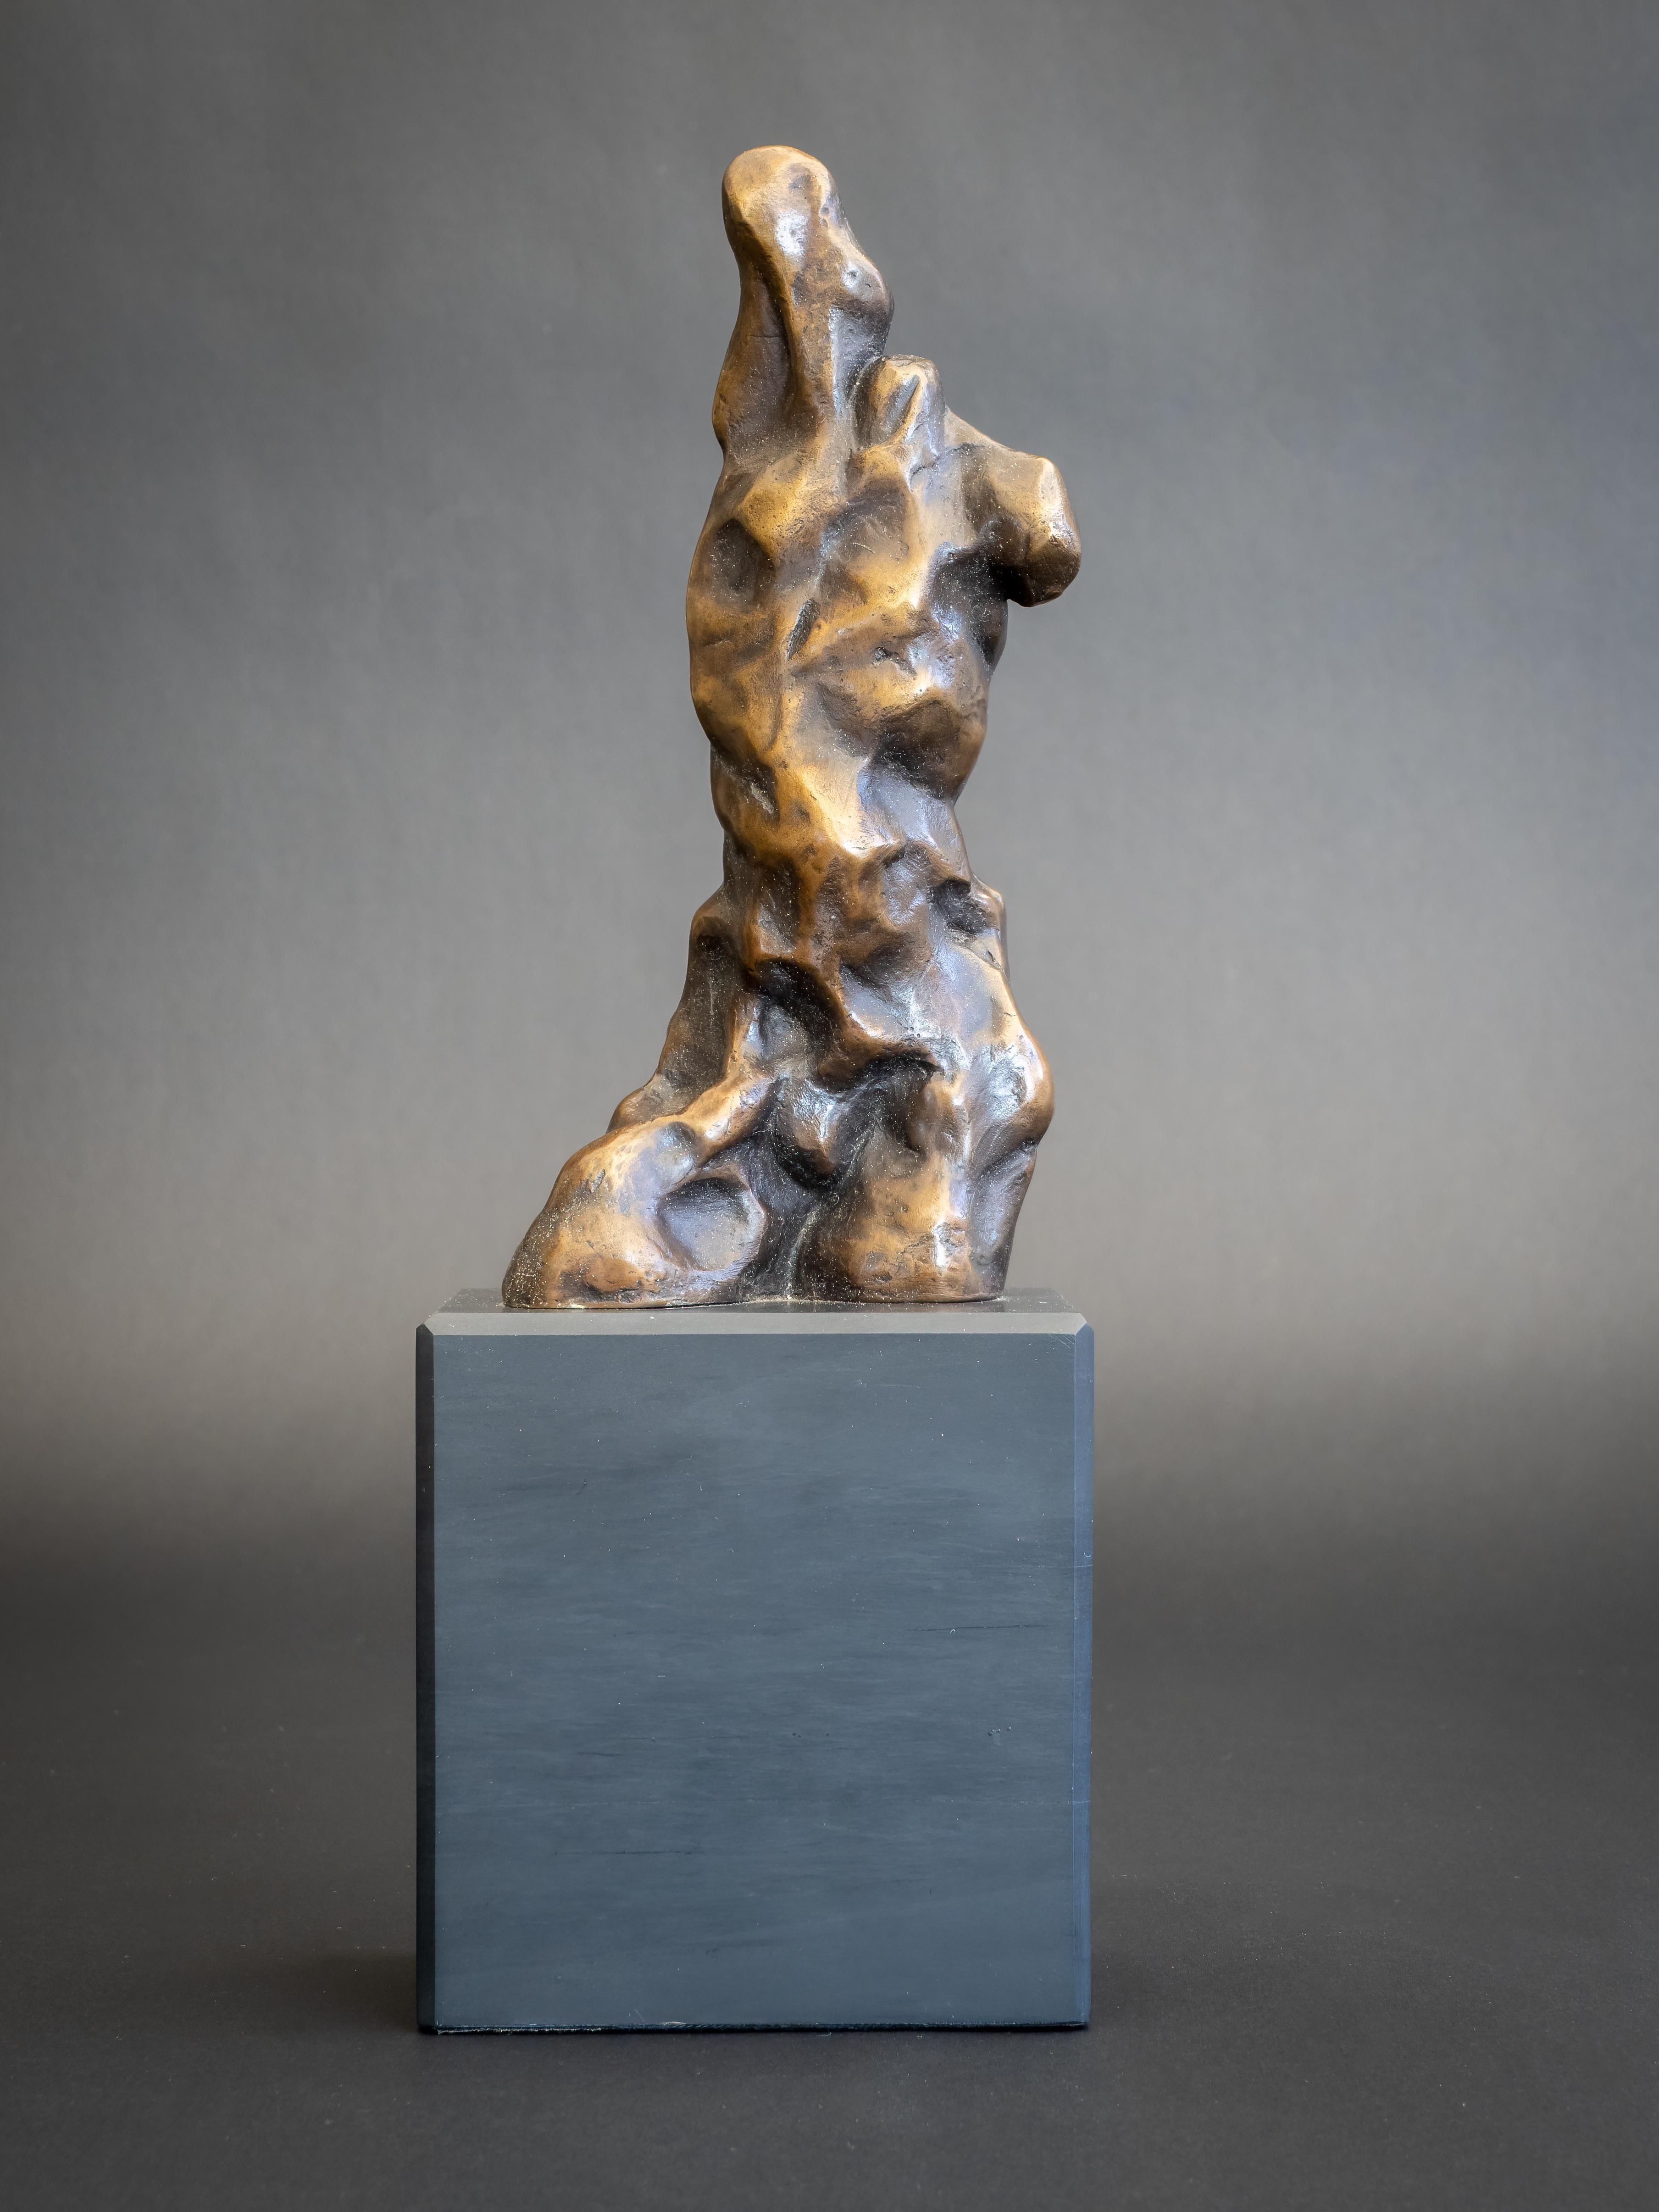 Adam II - Originale figurative Bronzeskulpturen - Kunstwerke zum Verkauf - Zeitgenössische Kunst – Sculpture von Nicola Godden